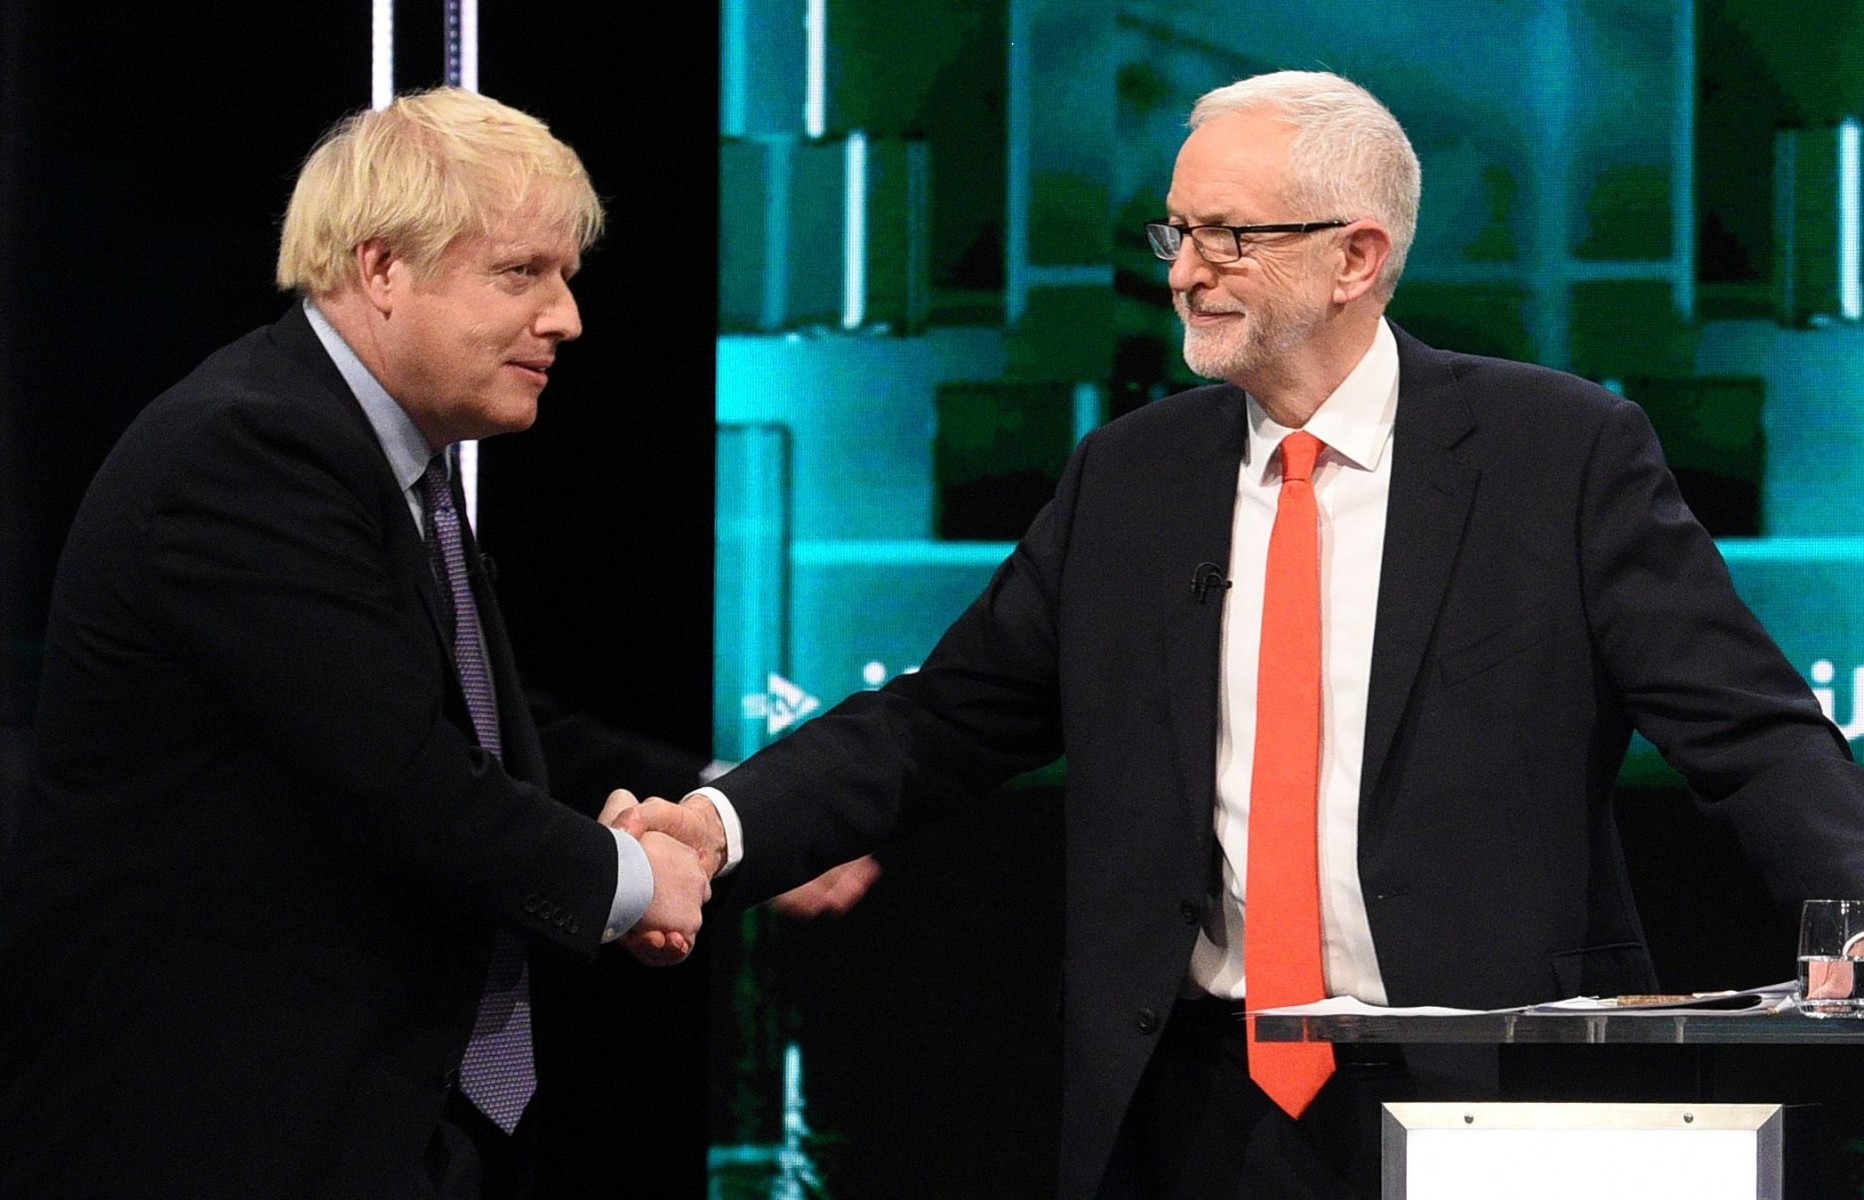 Boris Johnson and Jeremy Corbyn today went head to head